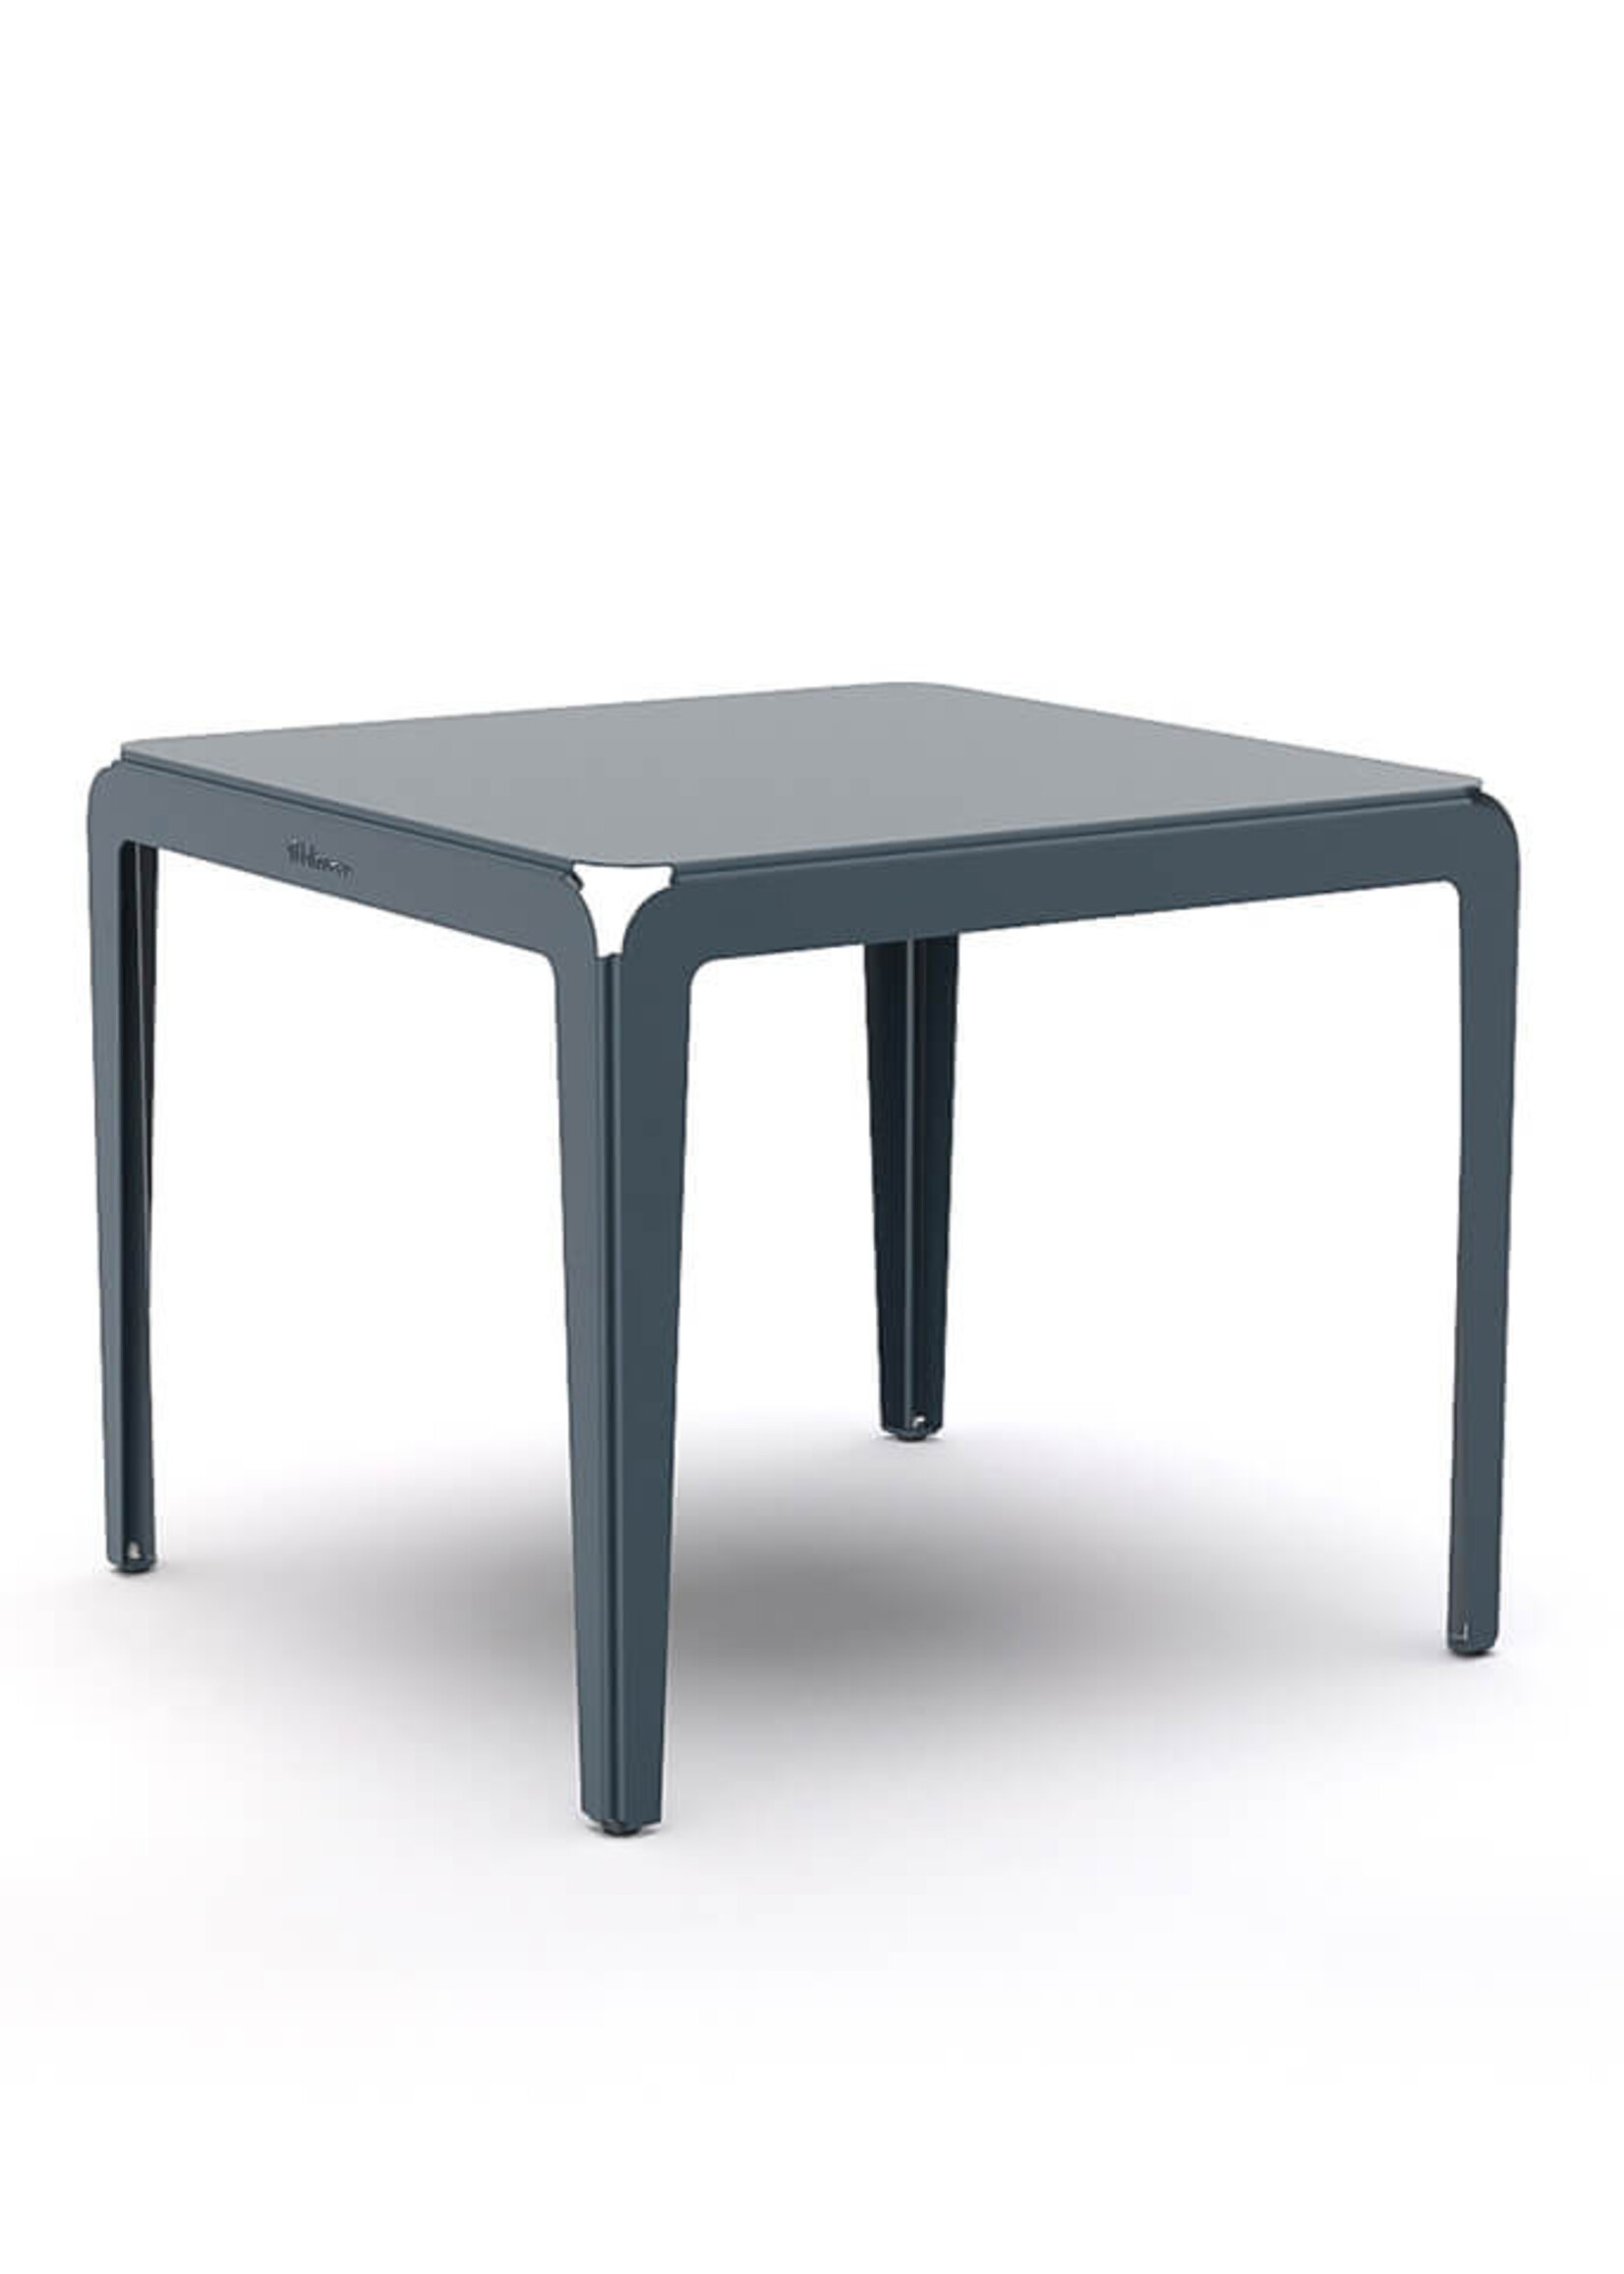 Weltevree Weltevree - Bended Table 90 - Grey Blue - Table de jardin légère en aluminium